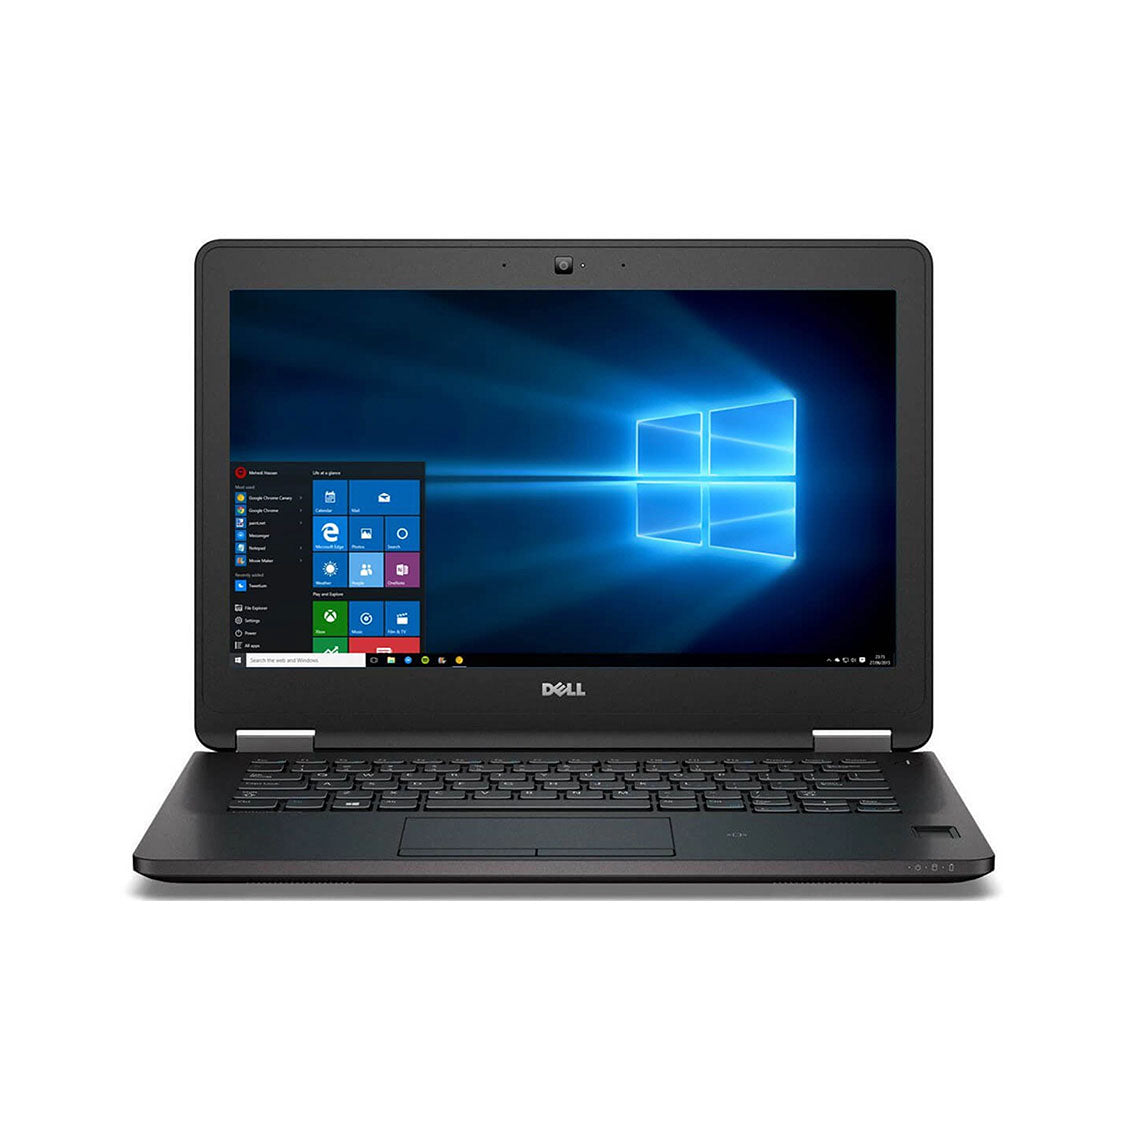 Dell Lattiude E5270 i5 6th Gen 8GB RAM 256GB SSD - Good Condition